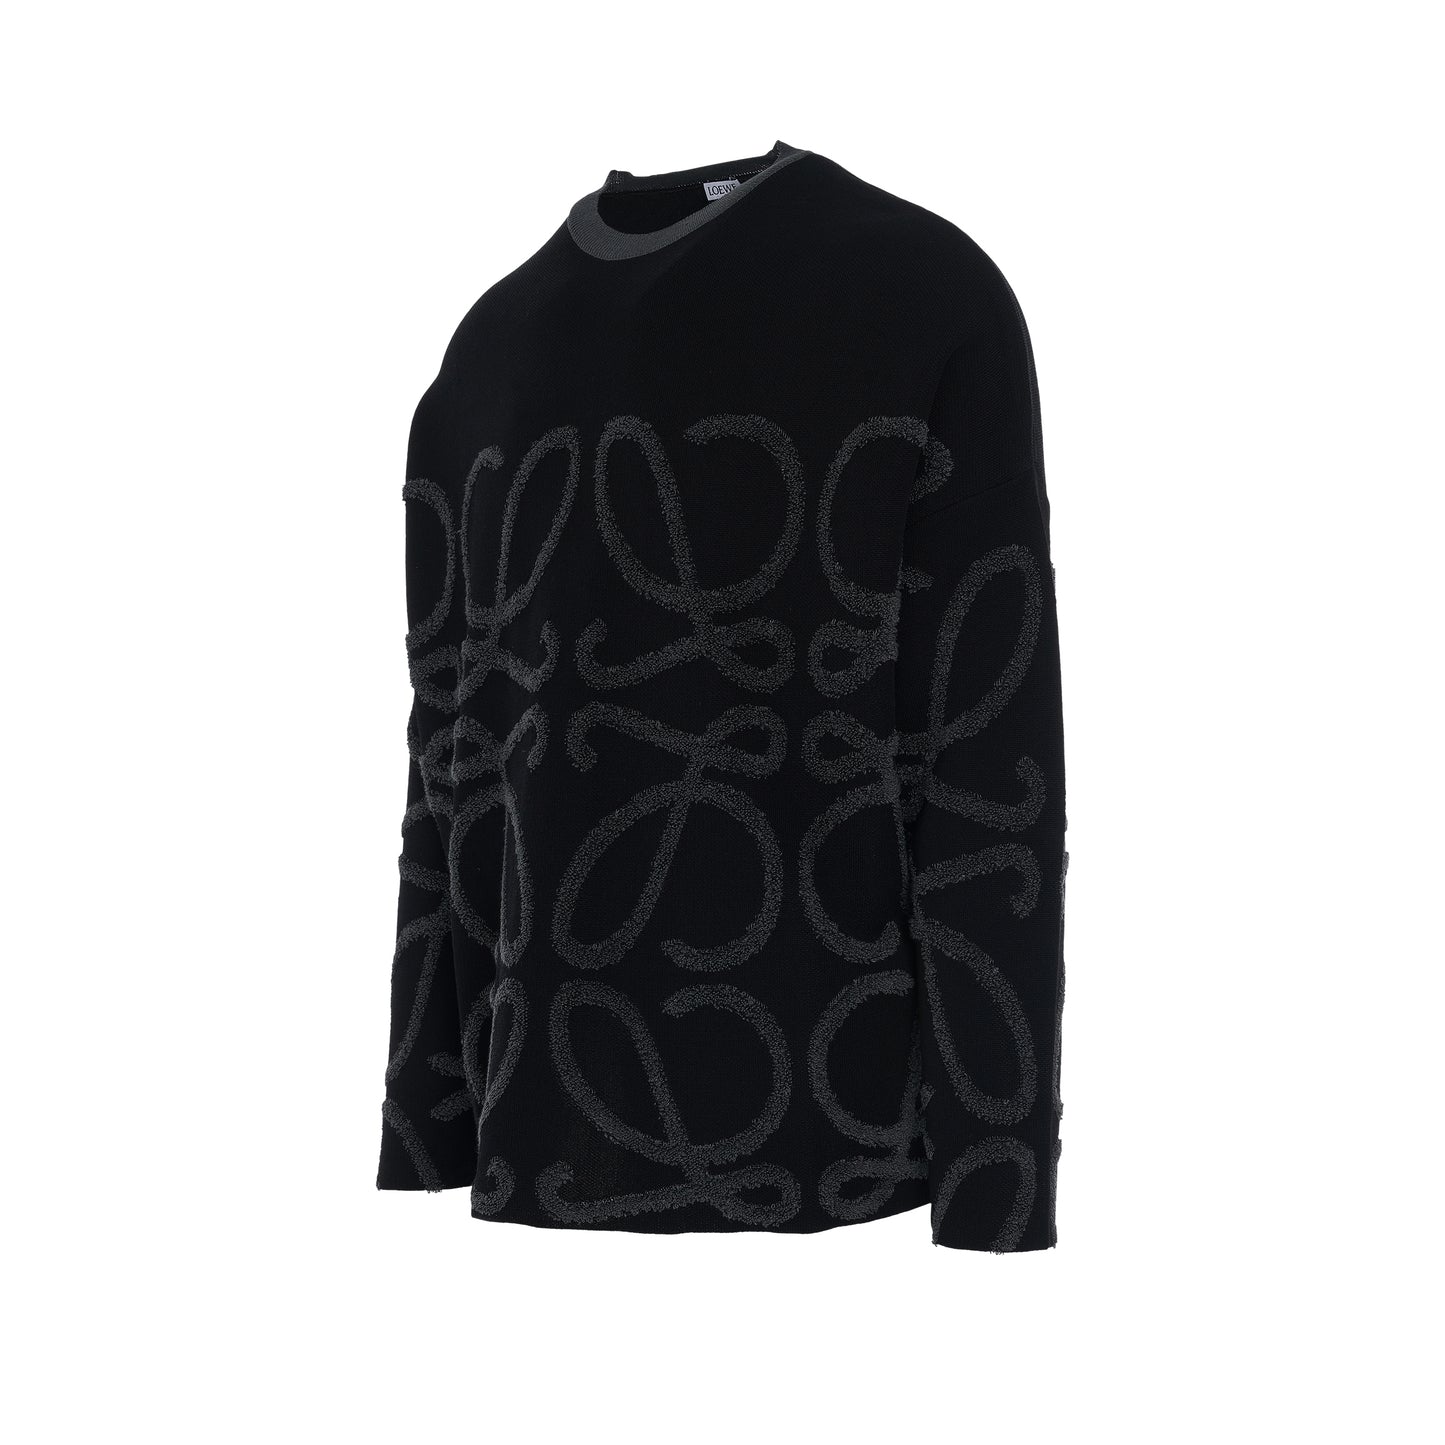 Anagram Jacquard Sweater in Black